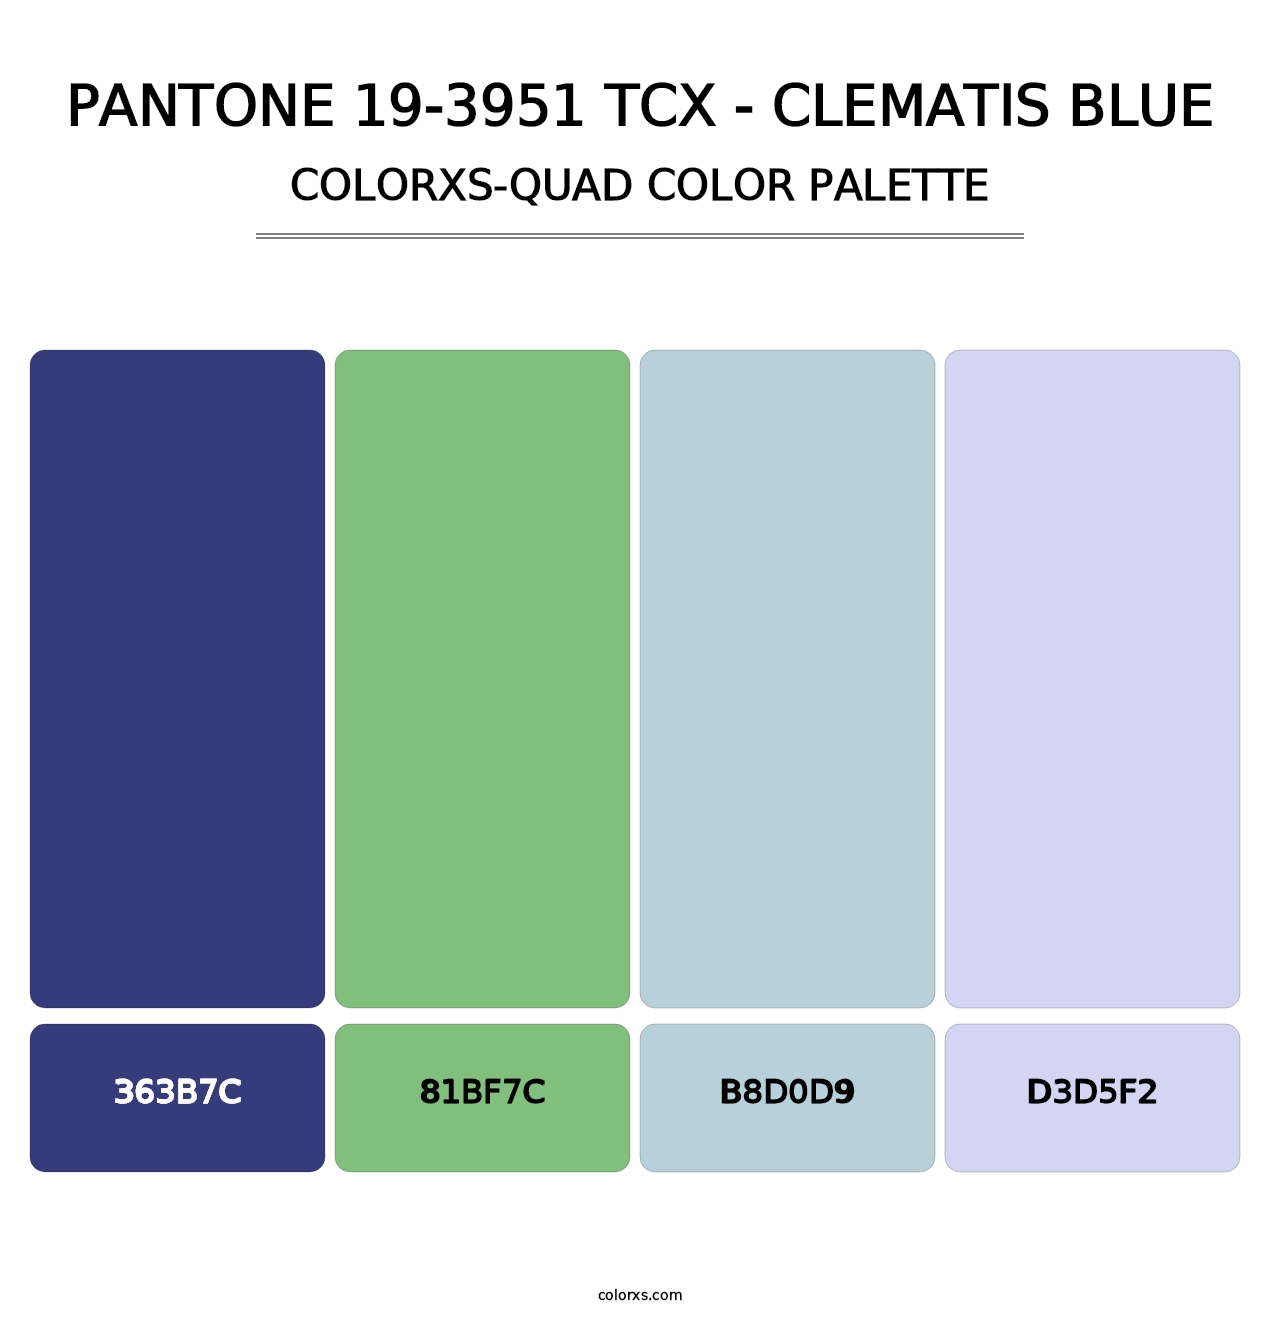 PANTONE 19-3951 TCX - Clematis Blue - Colorxs Quad Palette